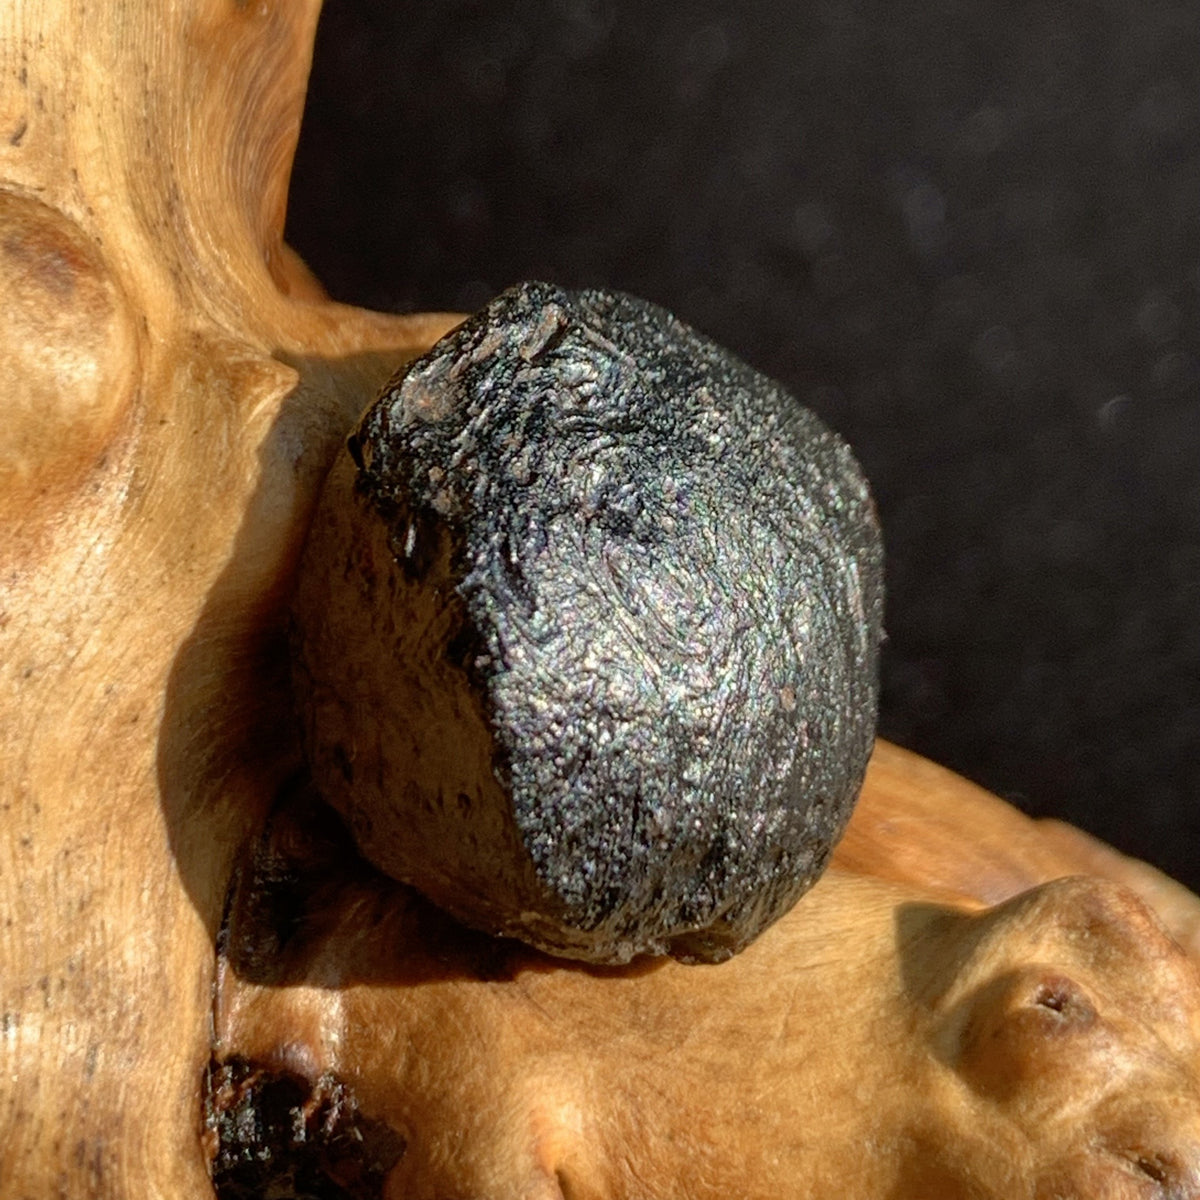 Australite Tektite 5 grams AU17-Moldavite Life